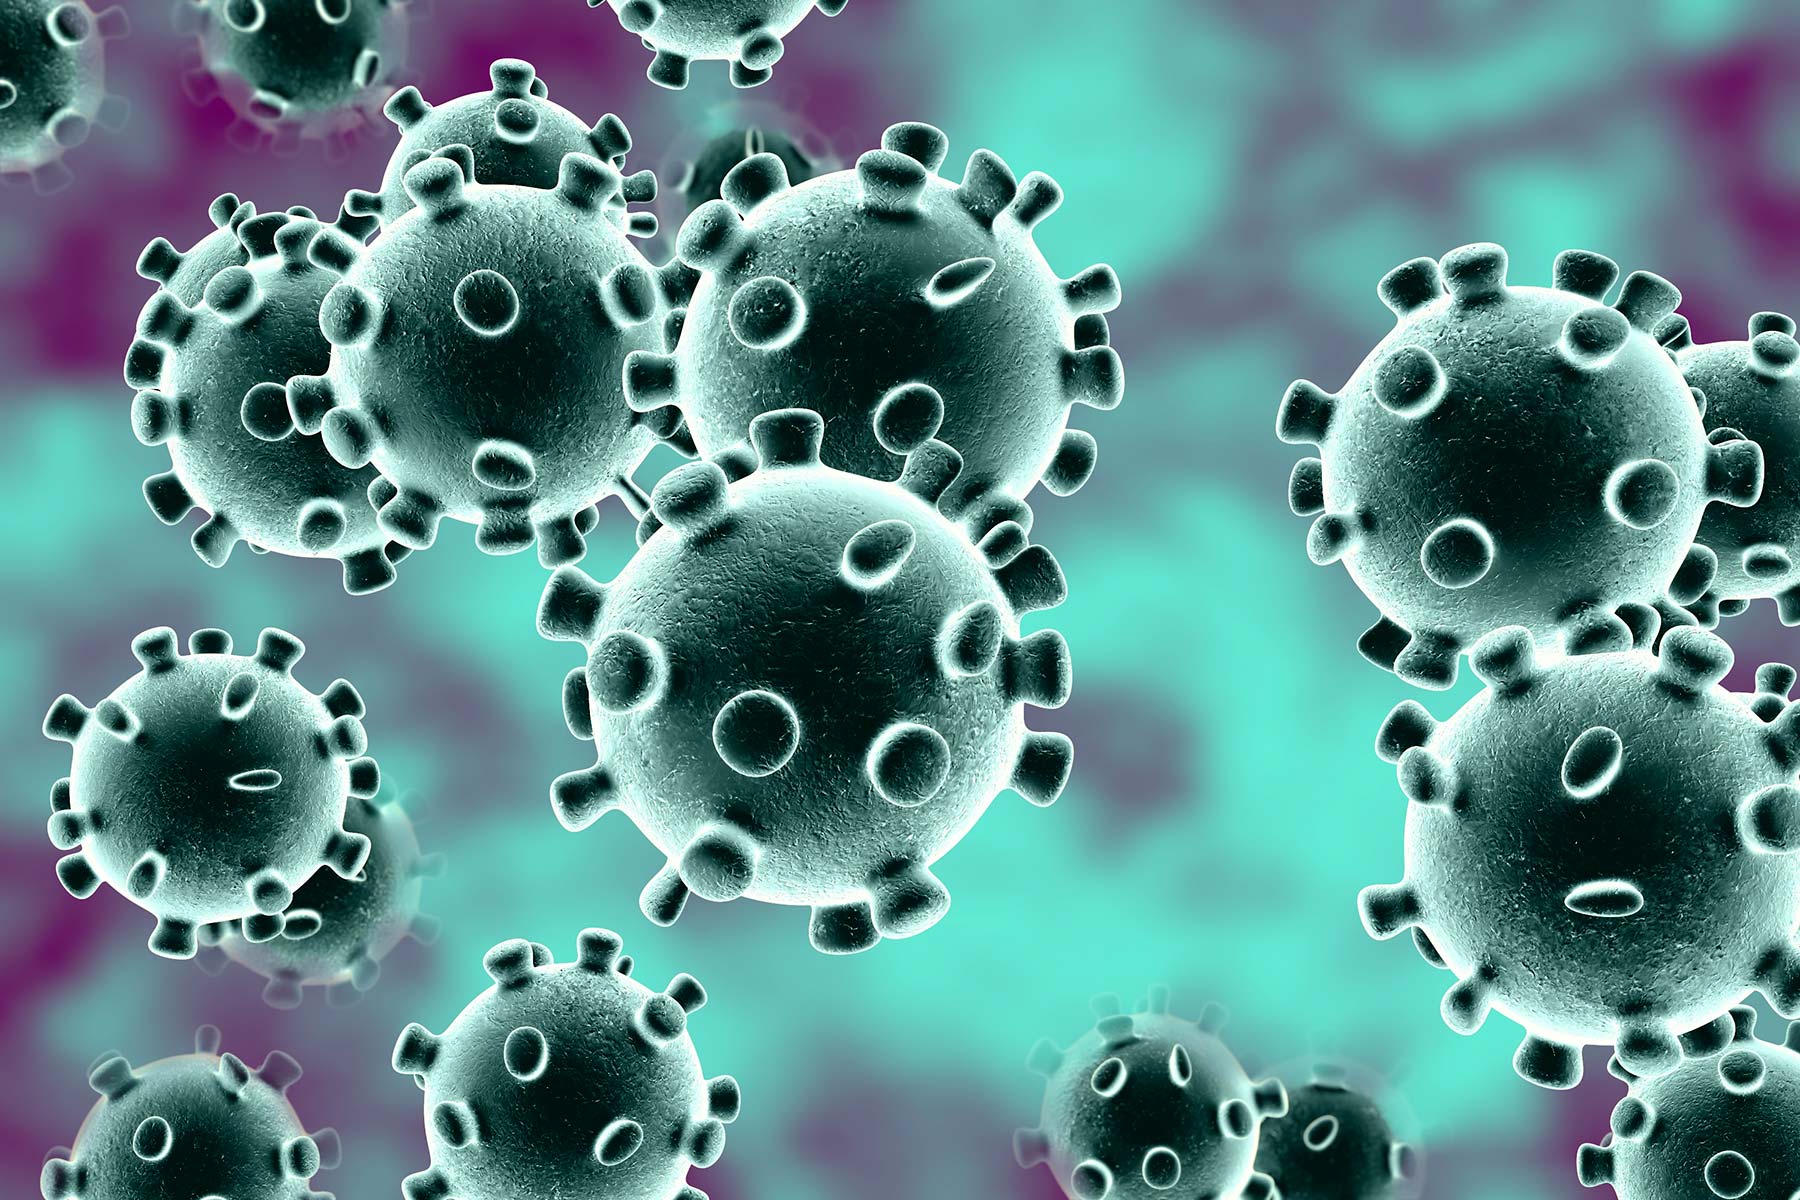 Coronavirus epidemic